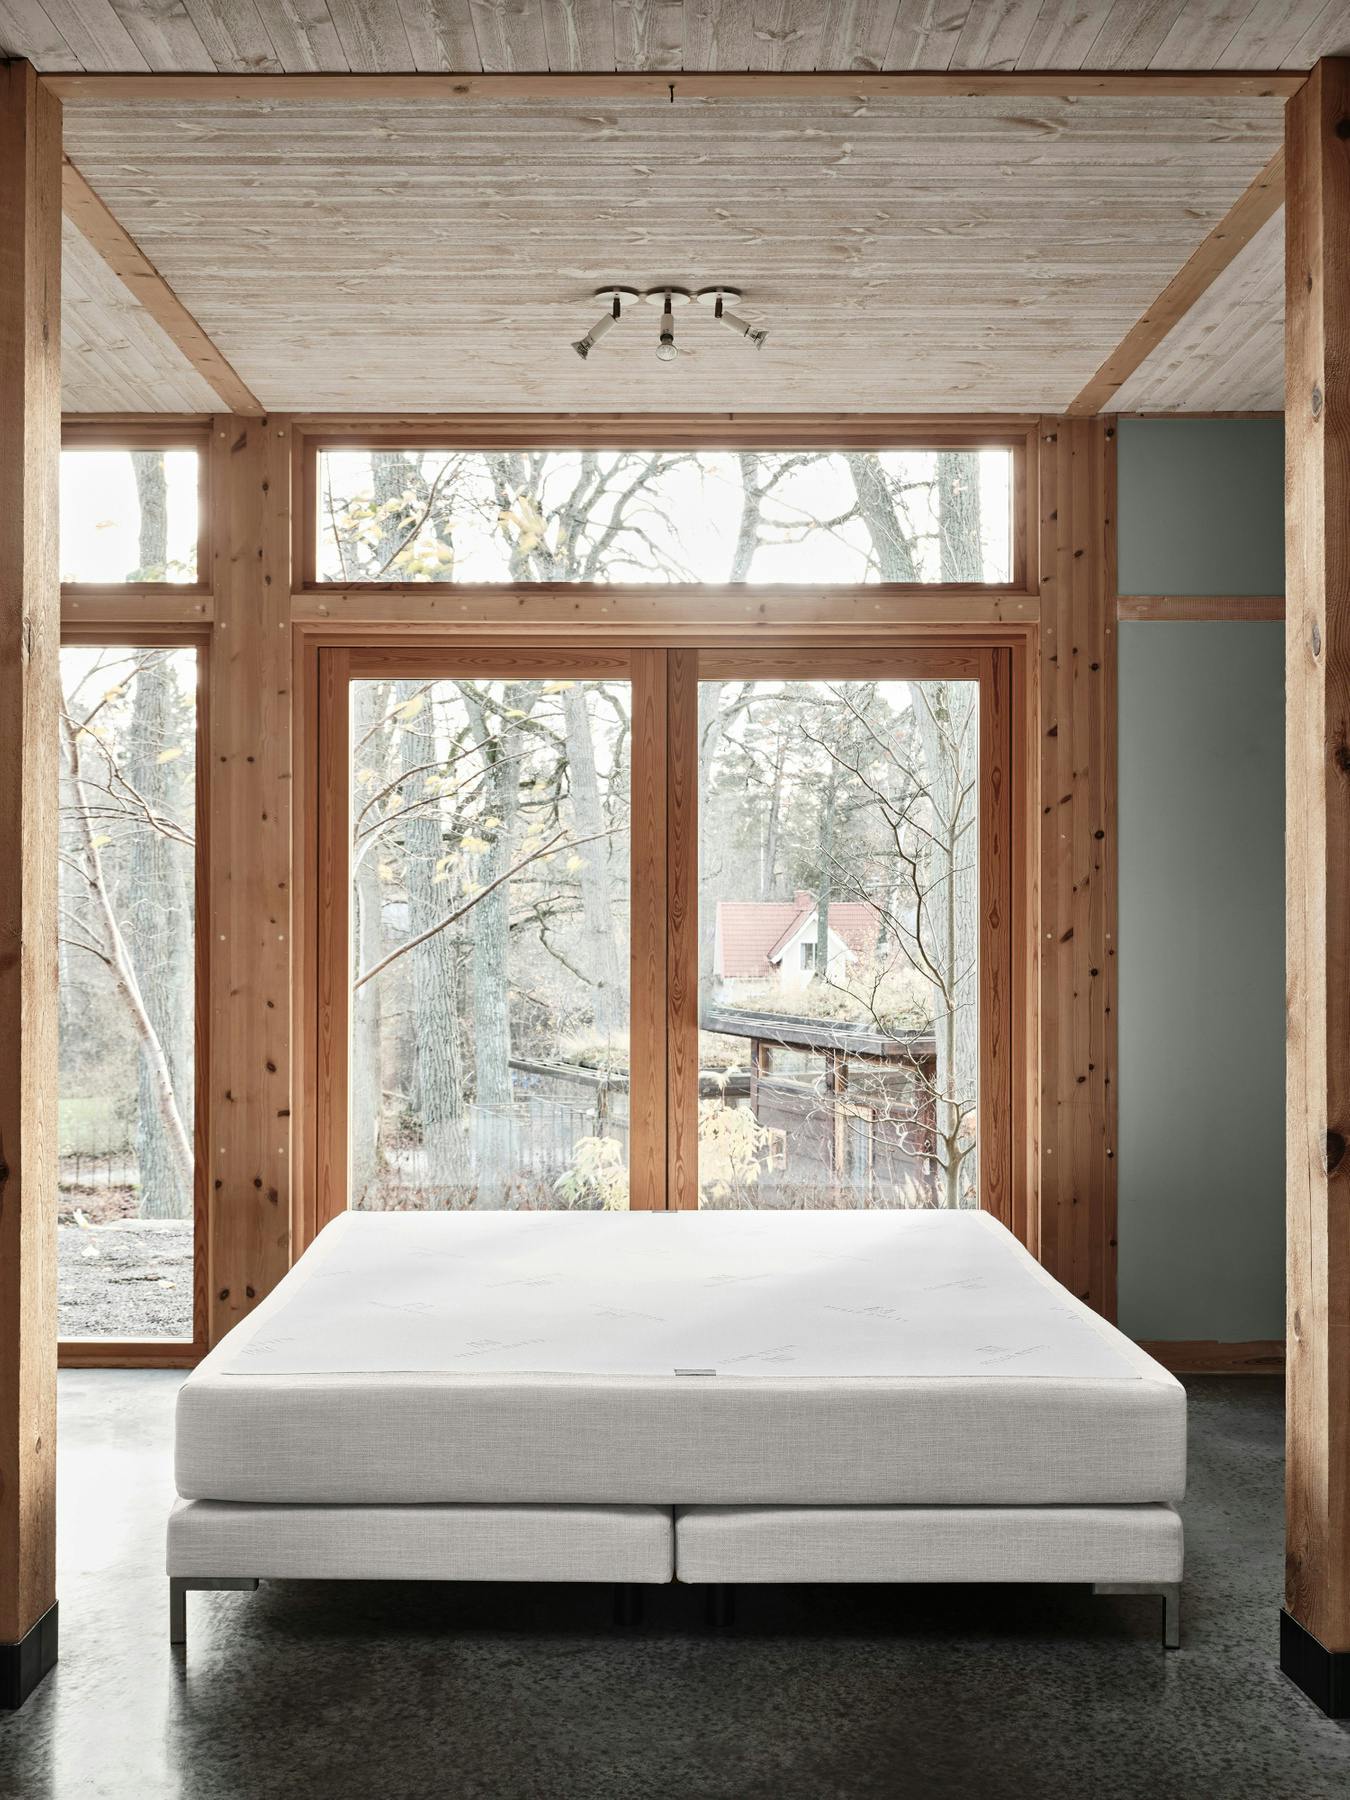 Alberto Continental Bed Medium Linen